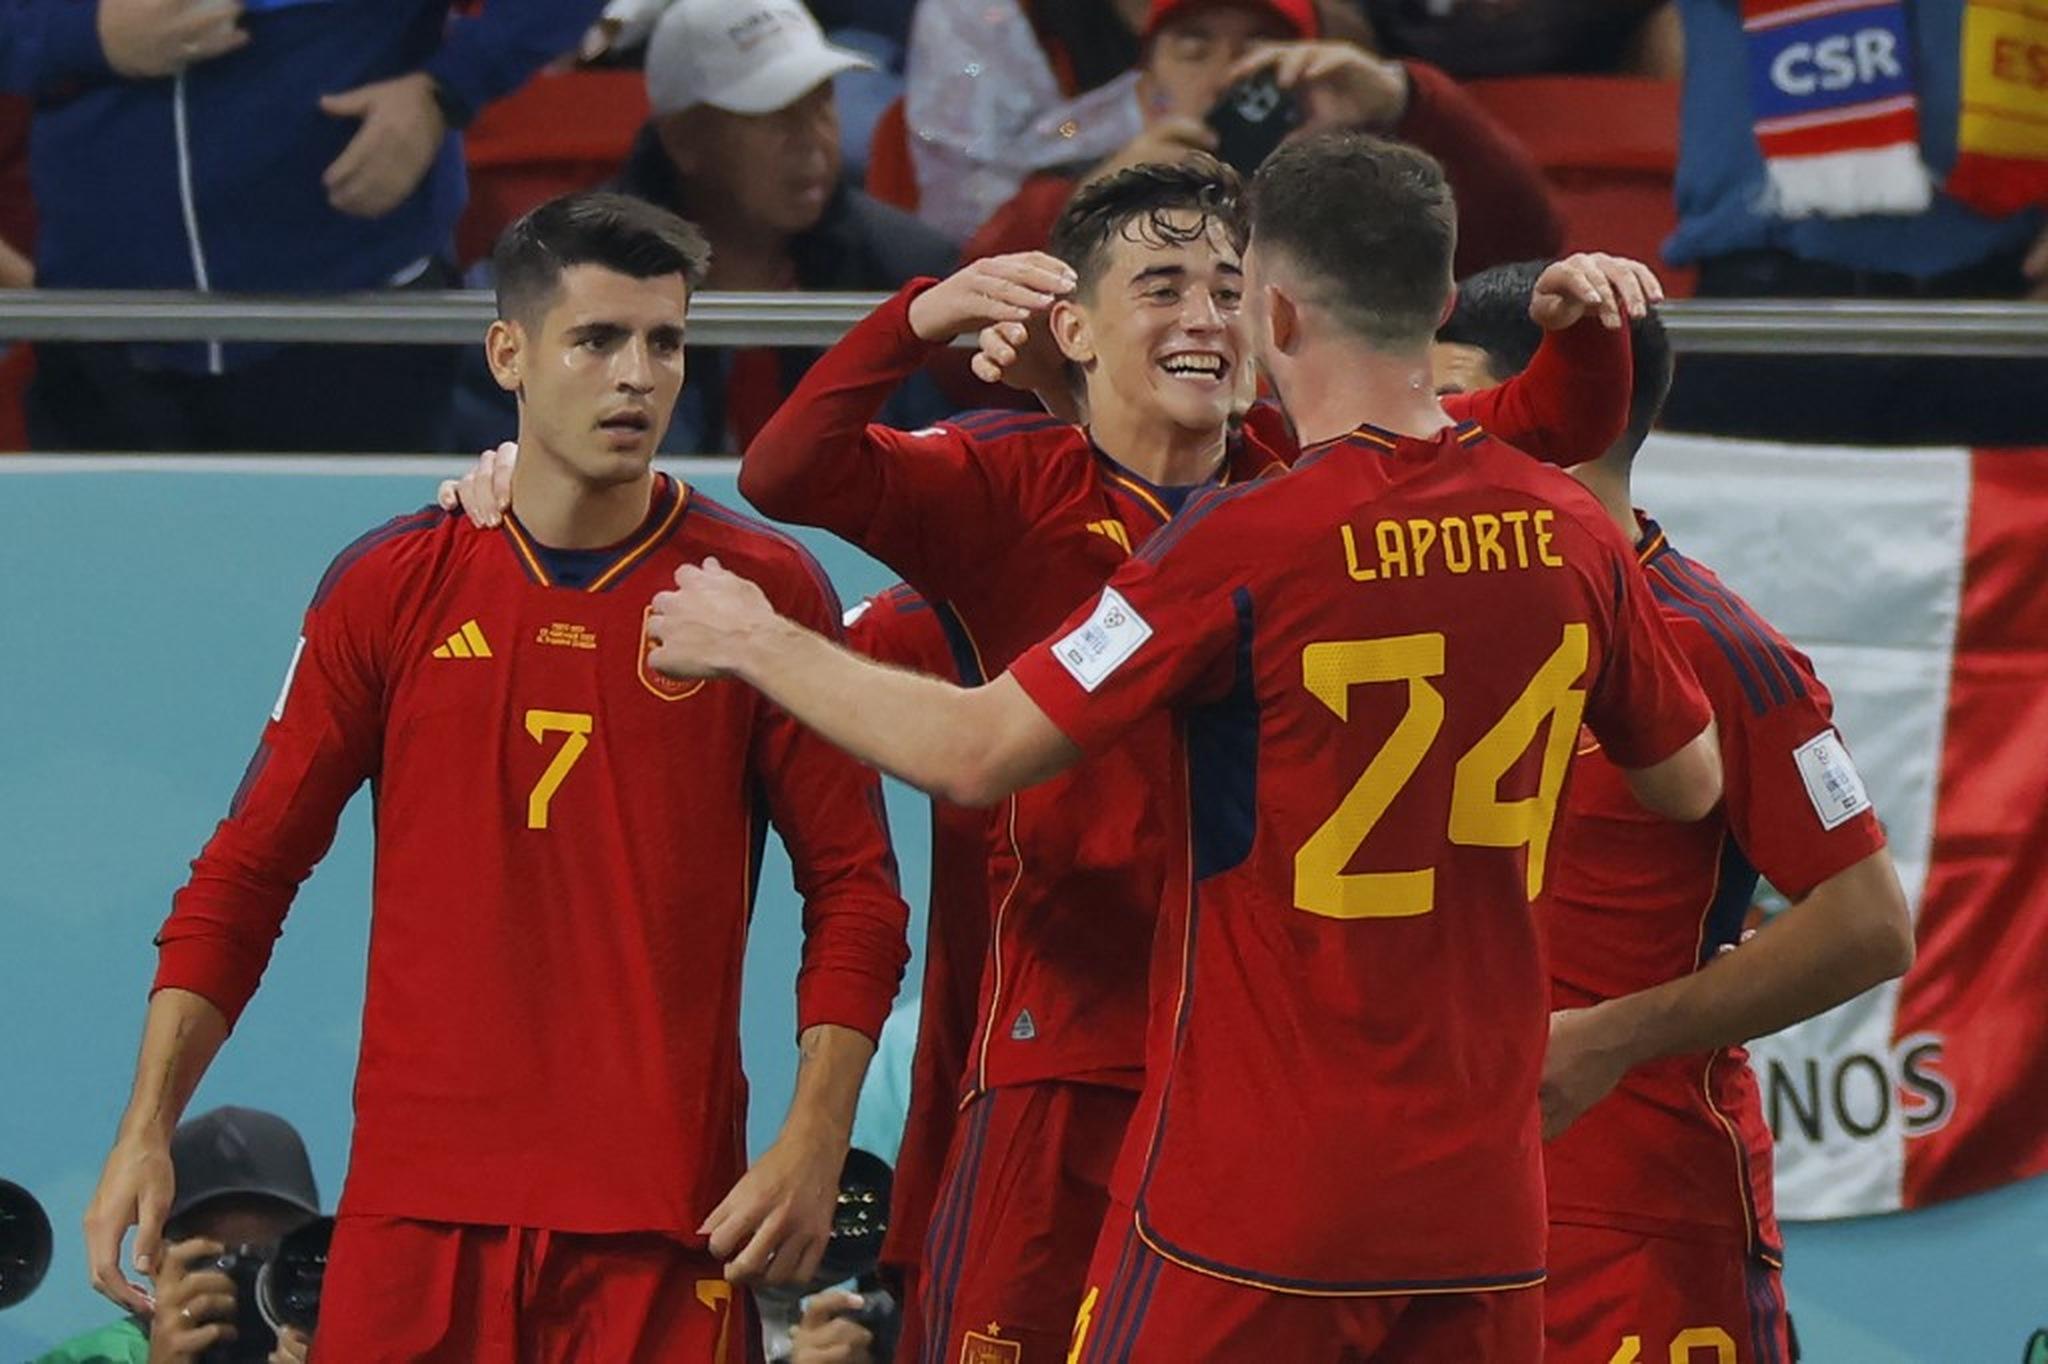 Espanha goleia Costa Rica por 7 a 0 na Copa do Catar